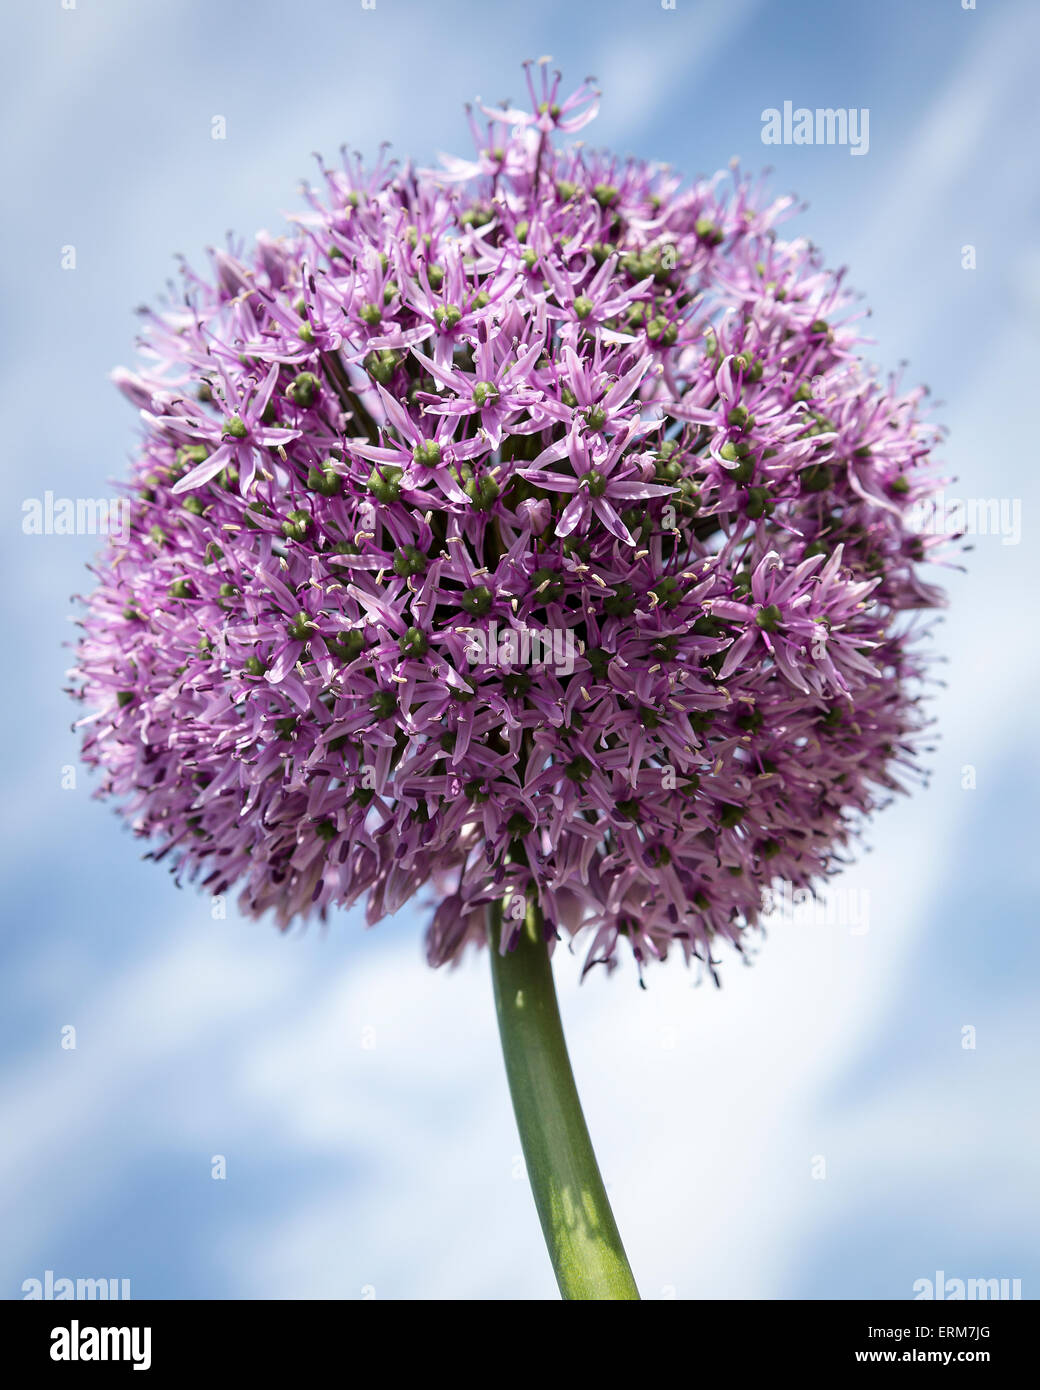 Allium Gigantium fiore contro un blu, wispy sky Foto Stock